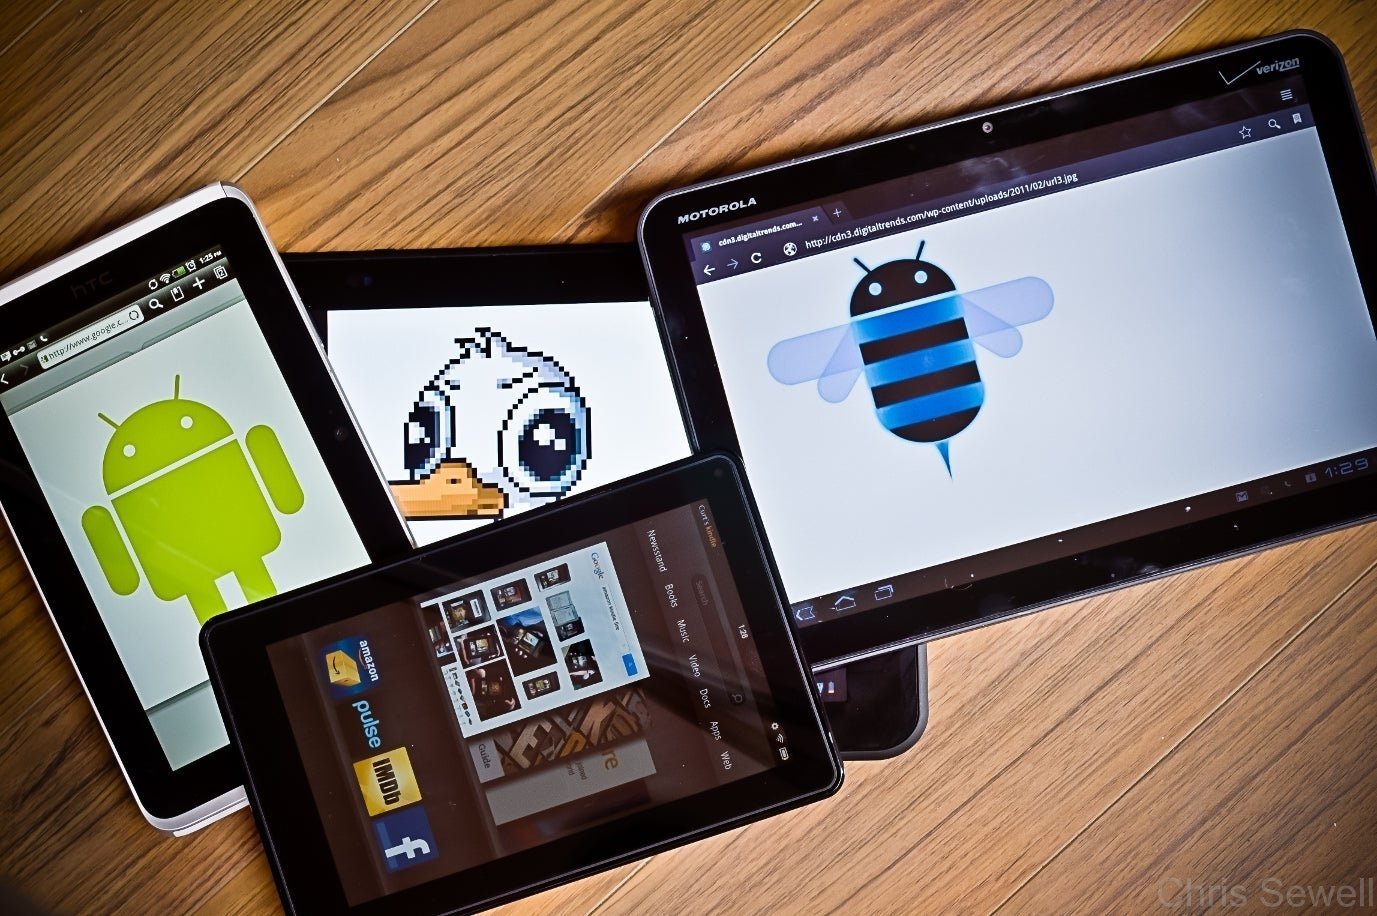 Varias tablets android con diferentes versiones